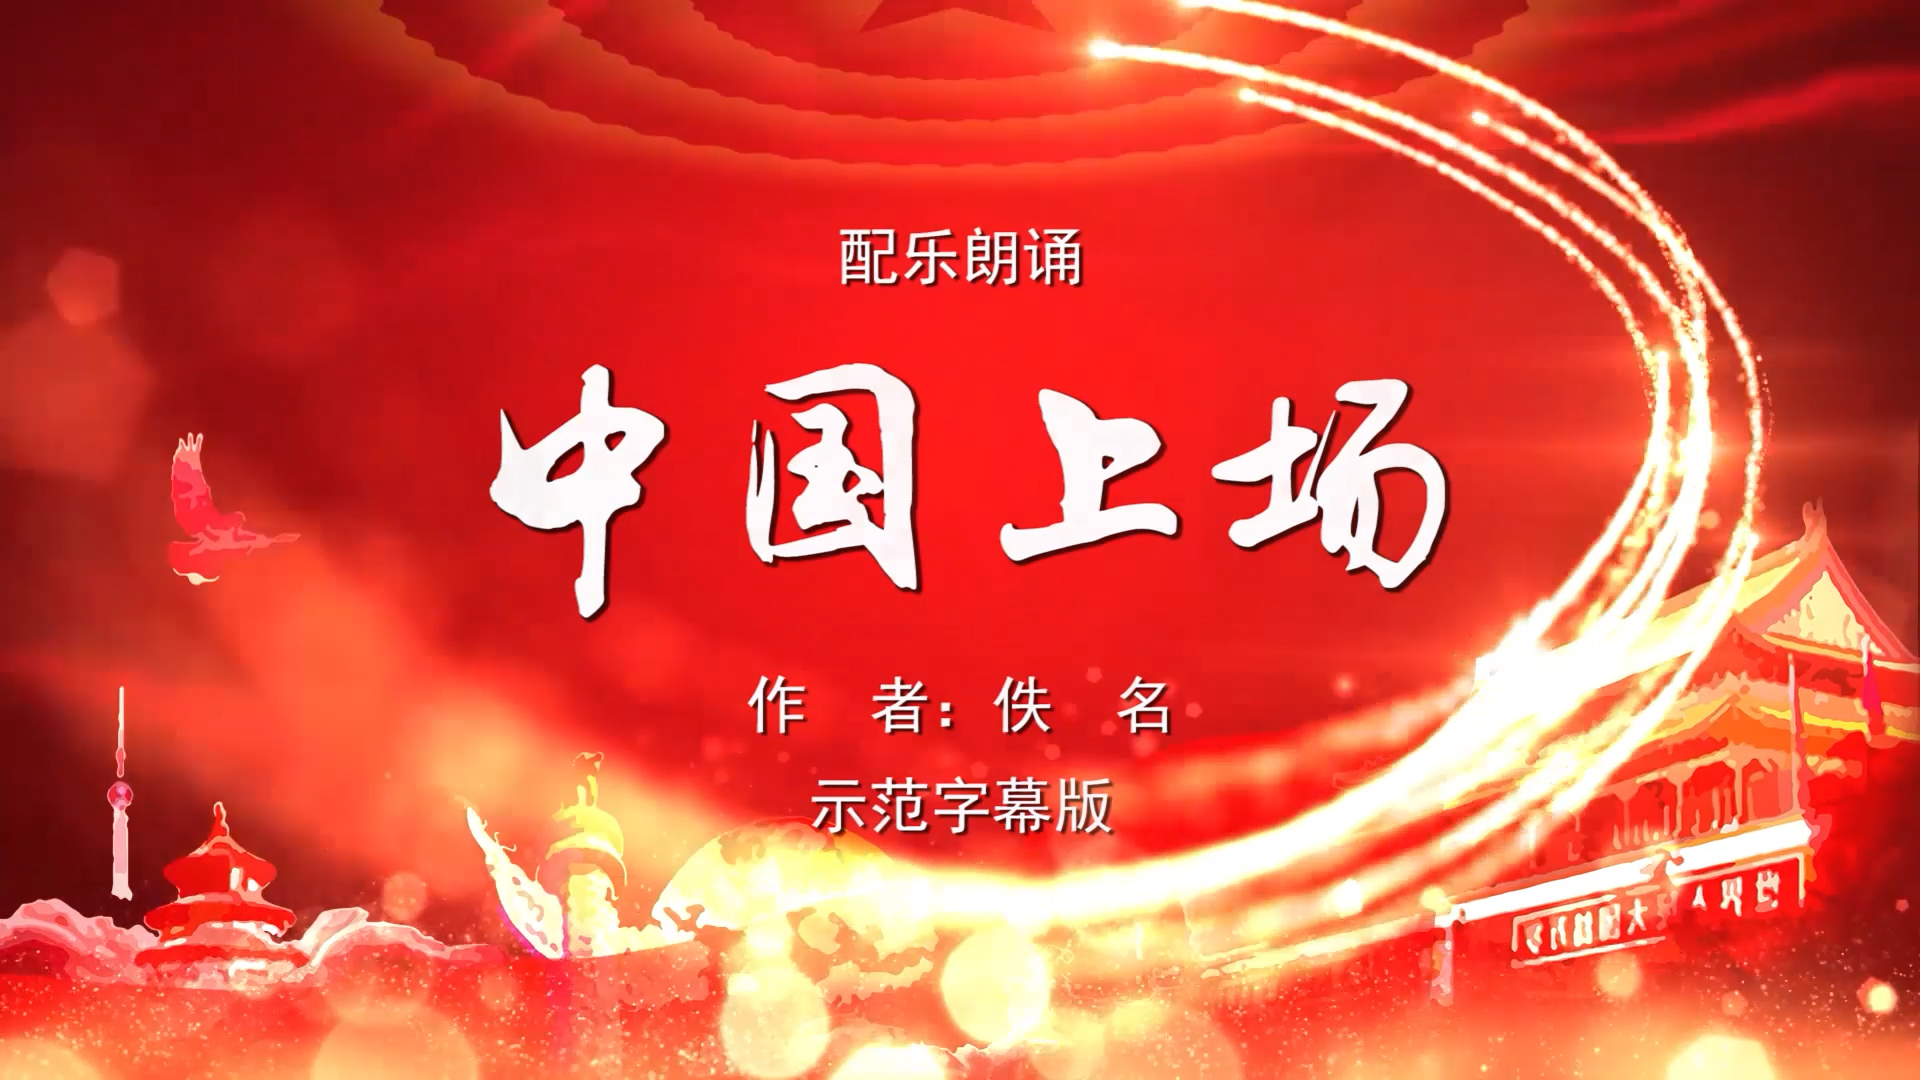 中国上场 多人诗歌朗诵配乐伴奏舞台演出LED背景视频素材TV